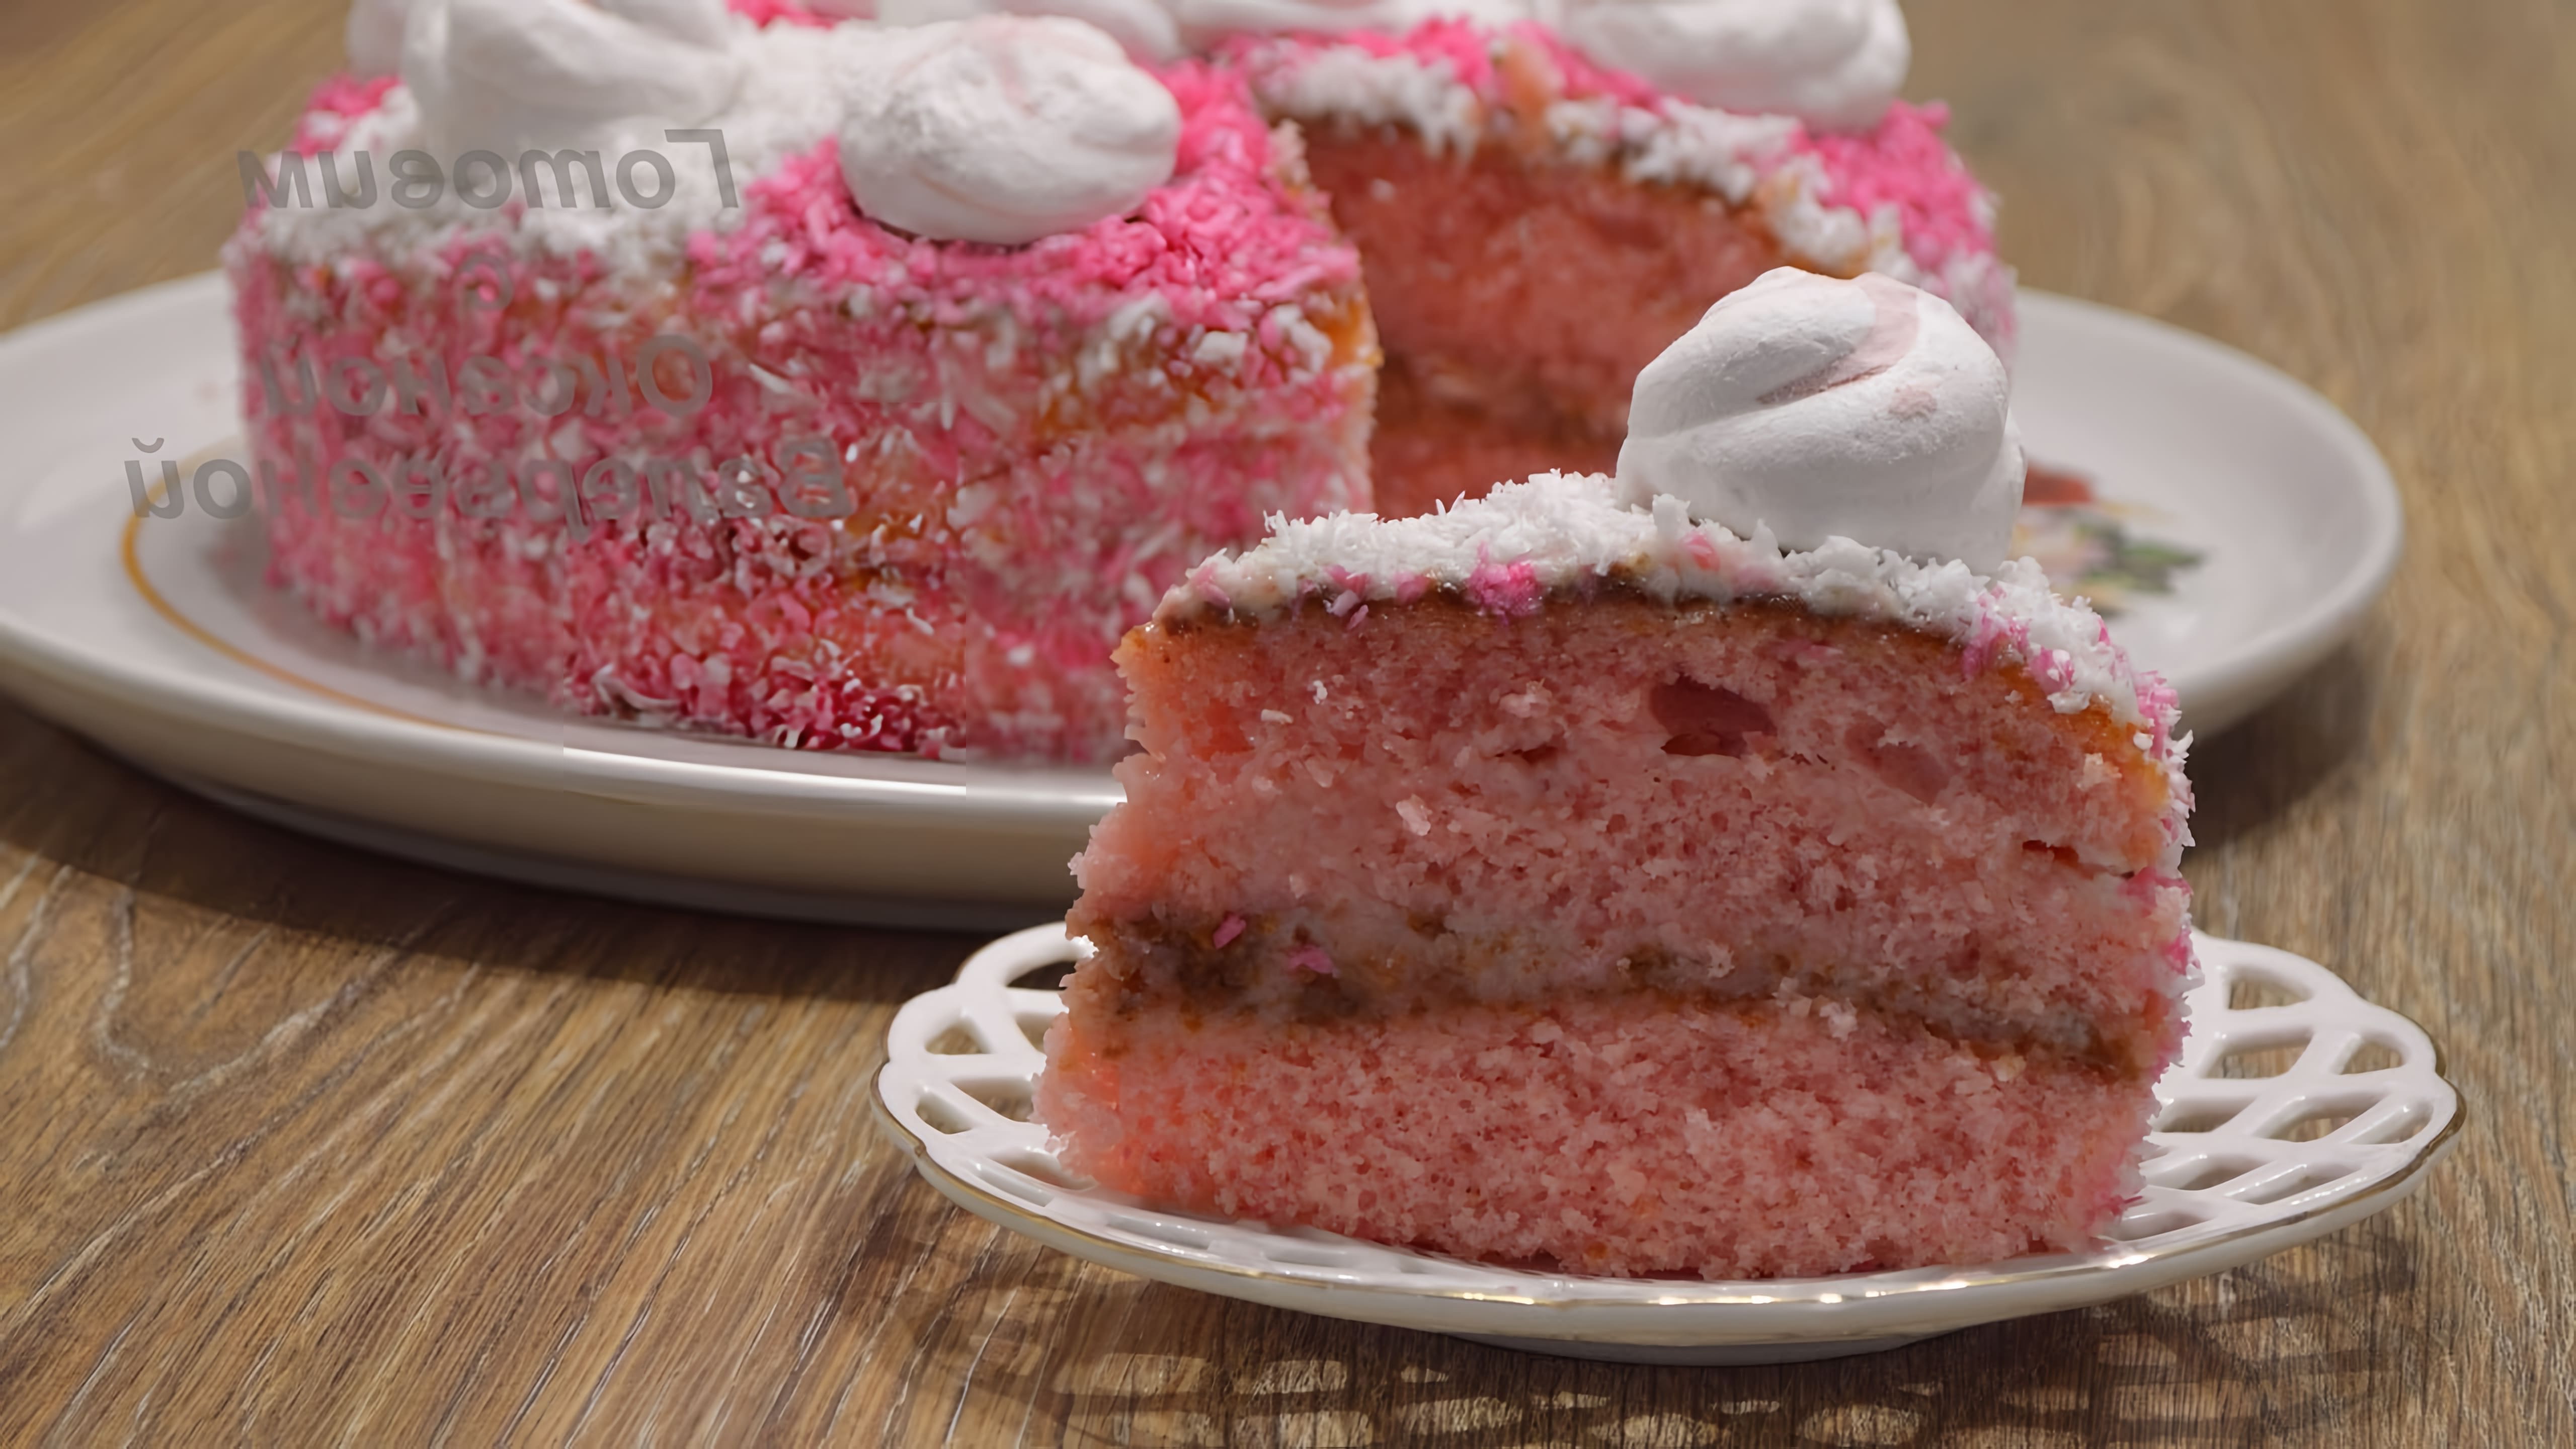 В этом видео демонстрируется процесс приготовления торта "Розовое облачко" из сухого киселя